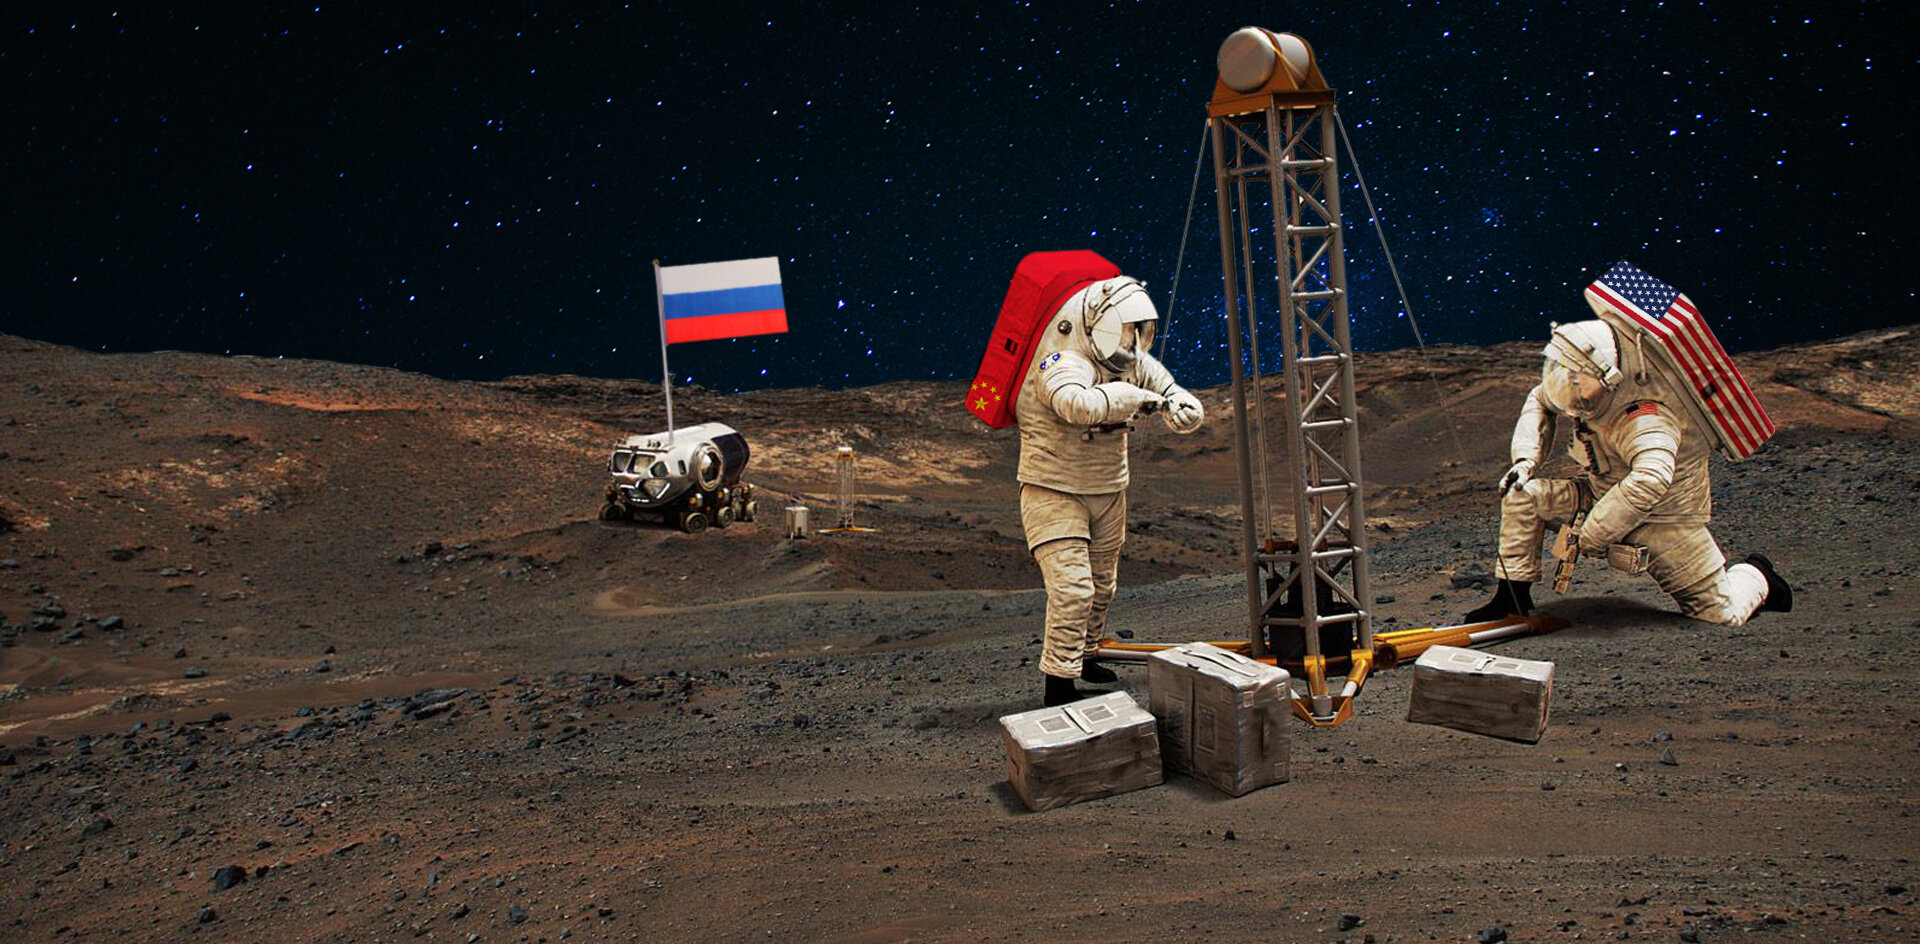 Что Россия может предложить для освоения космоса